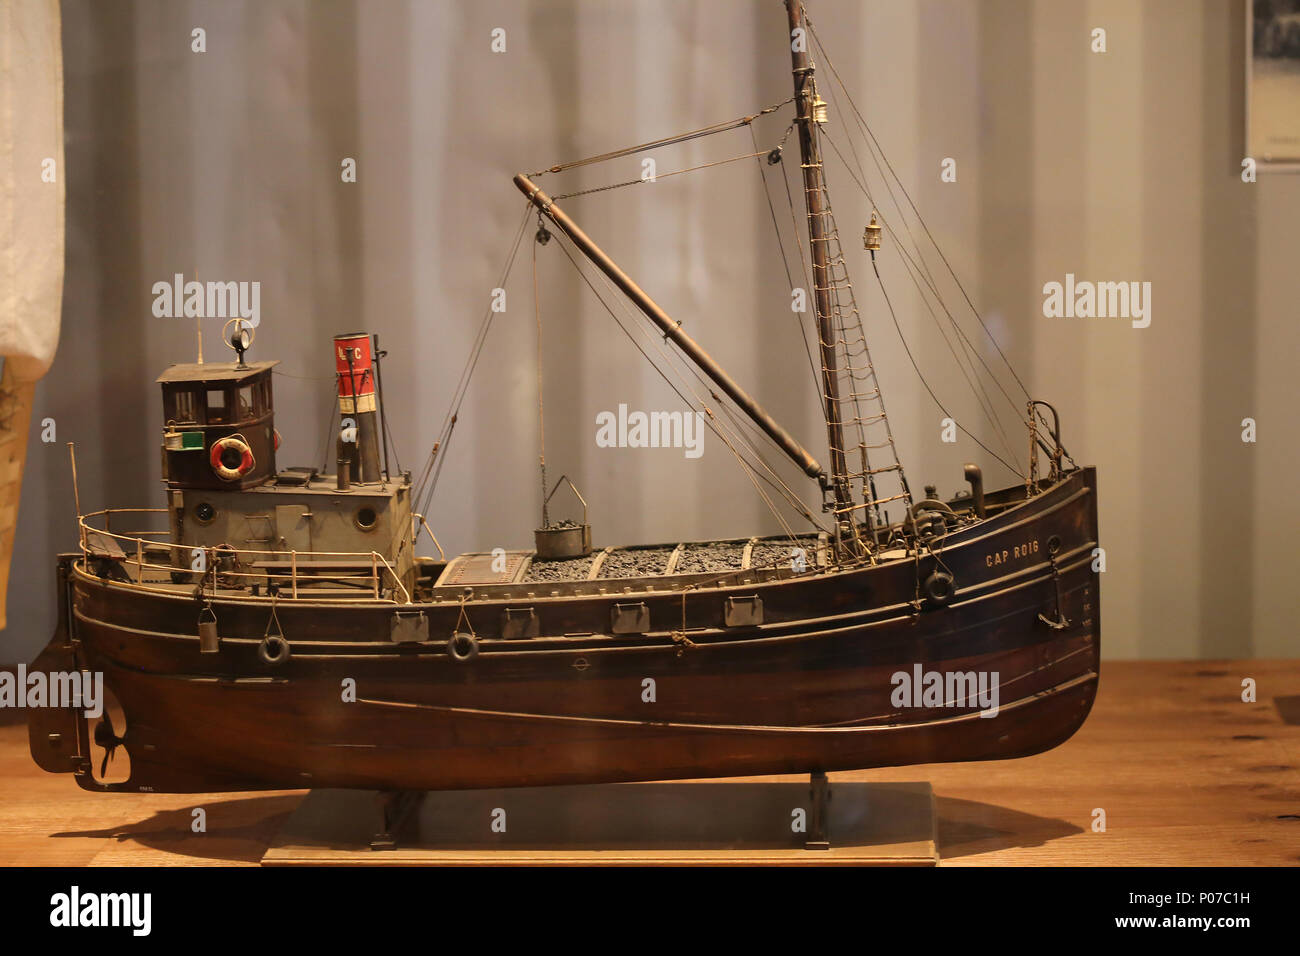 Modell der Cap Roig. Kleines Schiff von Tansporting Kohle. Maßstab: 1:30. Maritime Museum von Barcelona, Katalonien, Spanien. Stockfoto